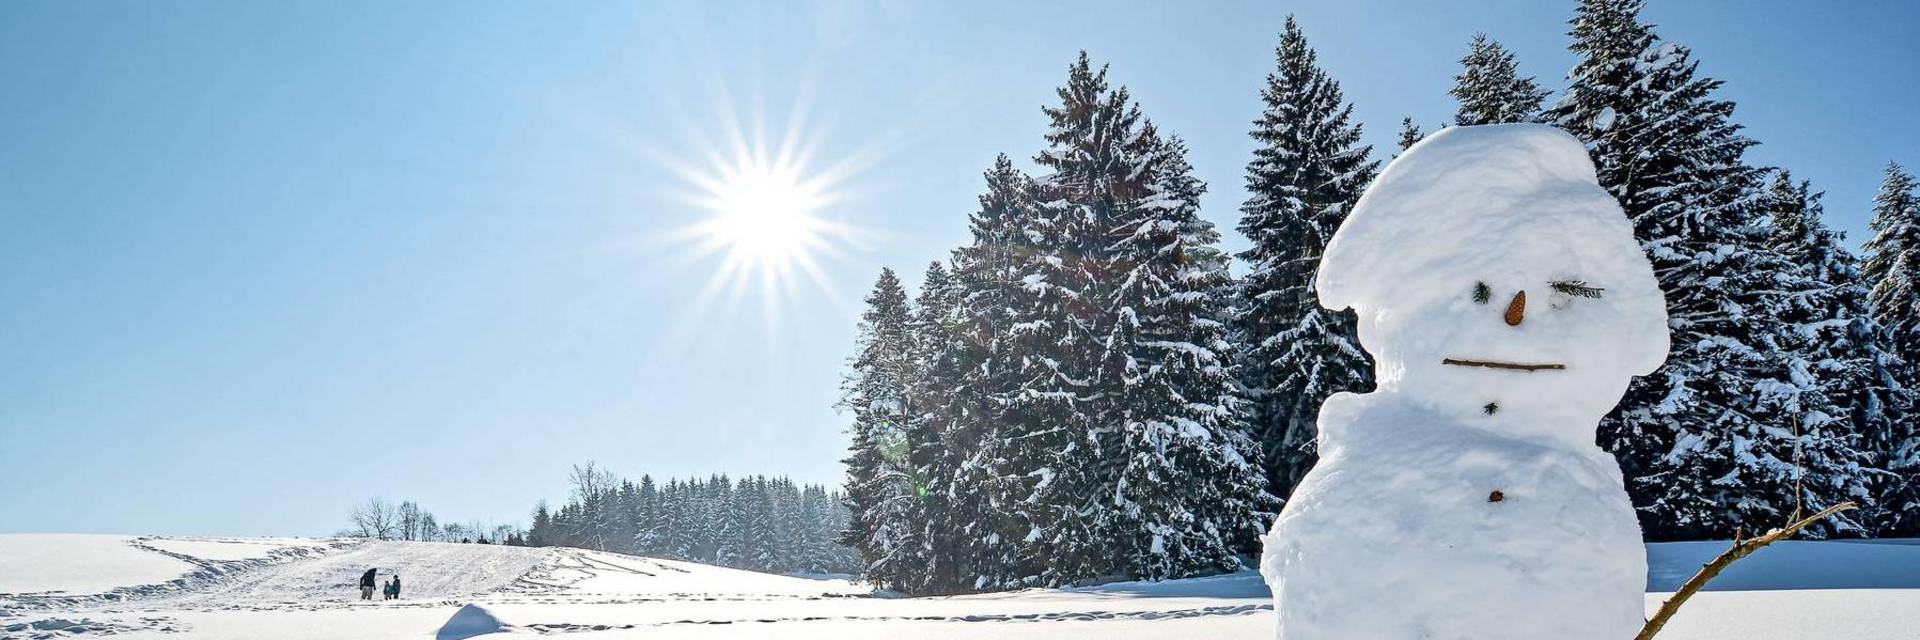 Scheidegg Winter Schneebericht